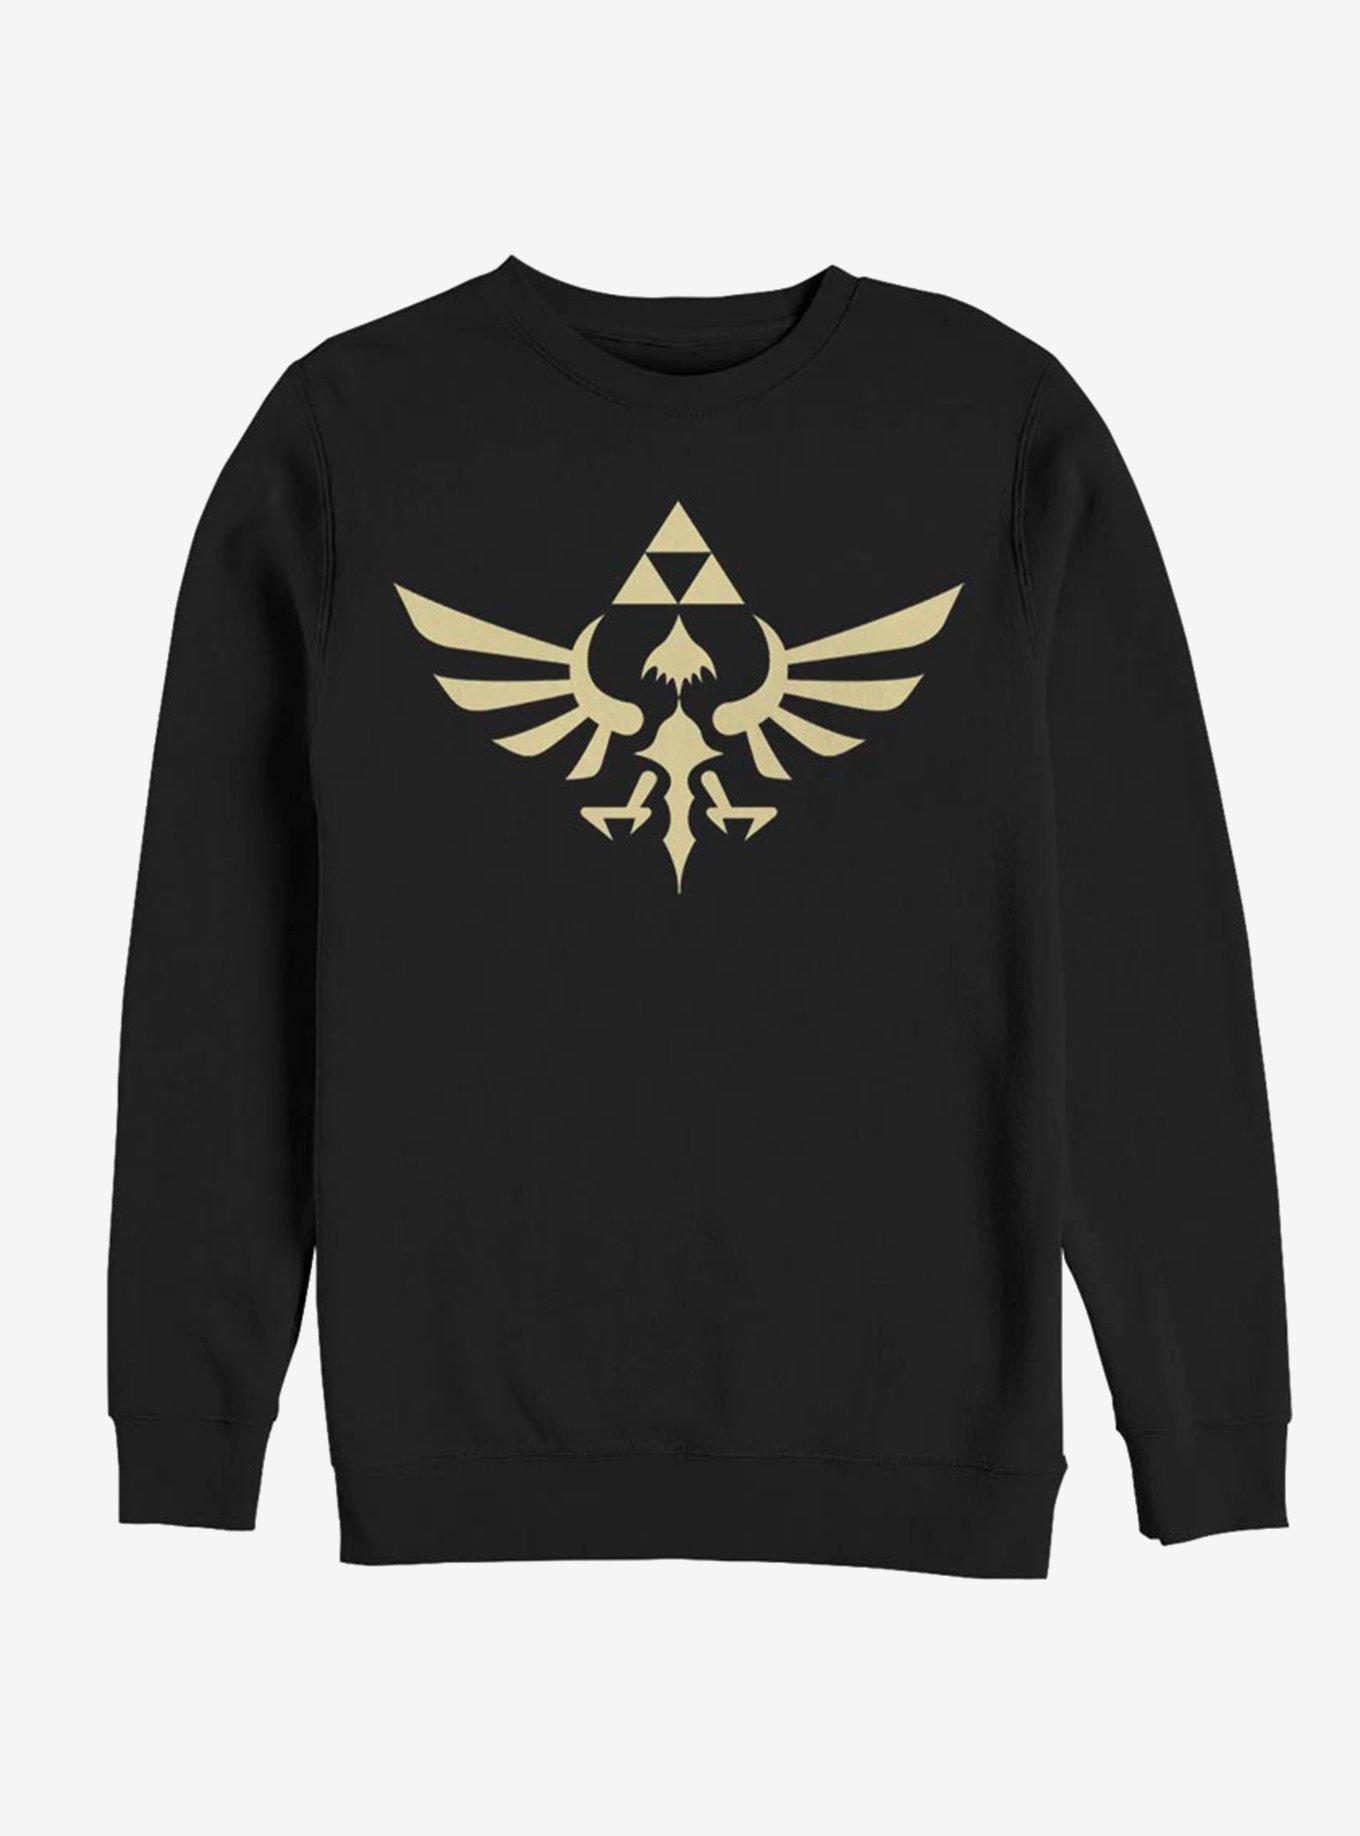 Nintendo Triumphant Triforce Sweatshirt, BLACK, hi-res